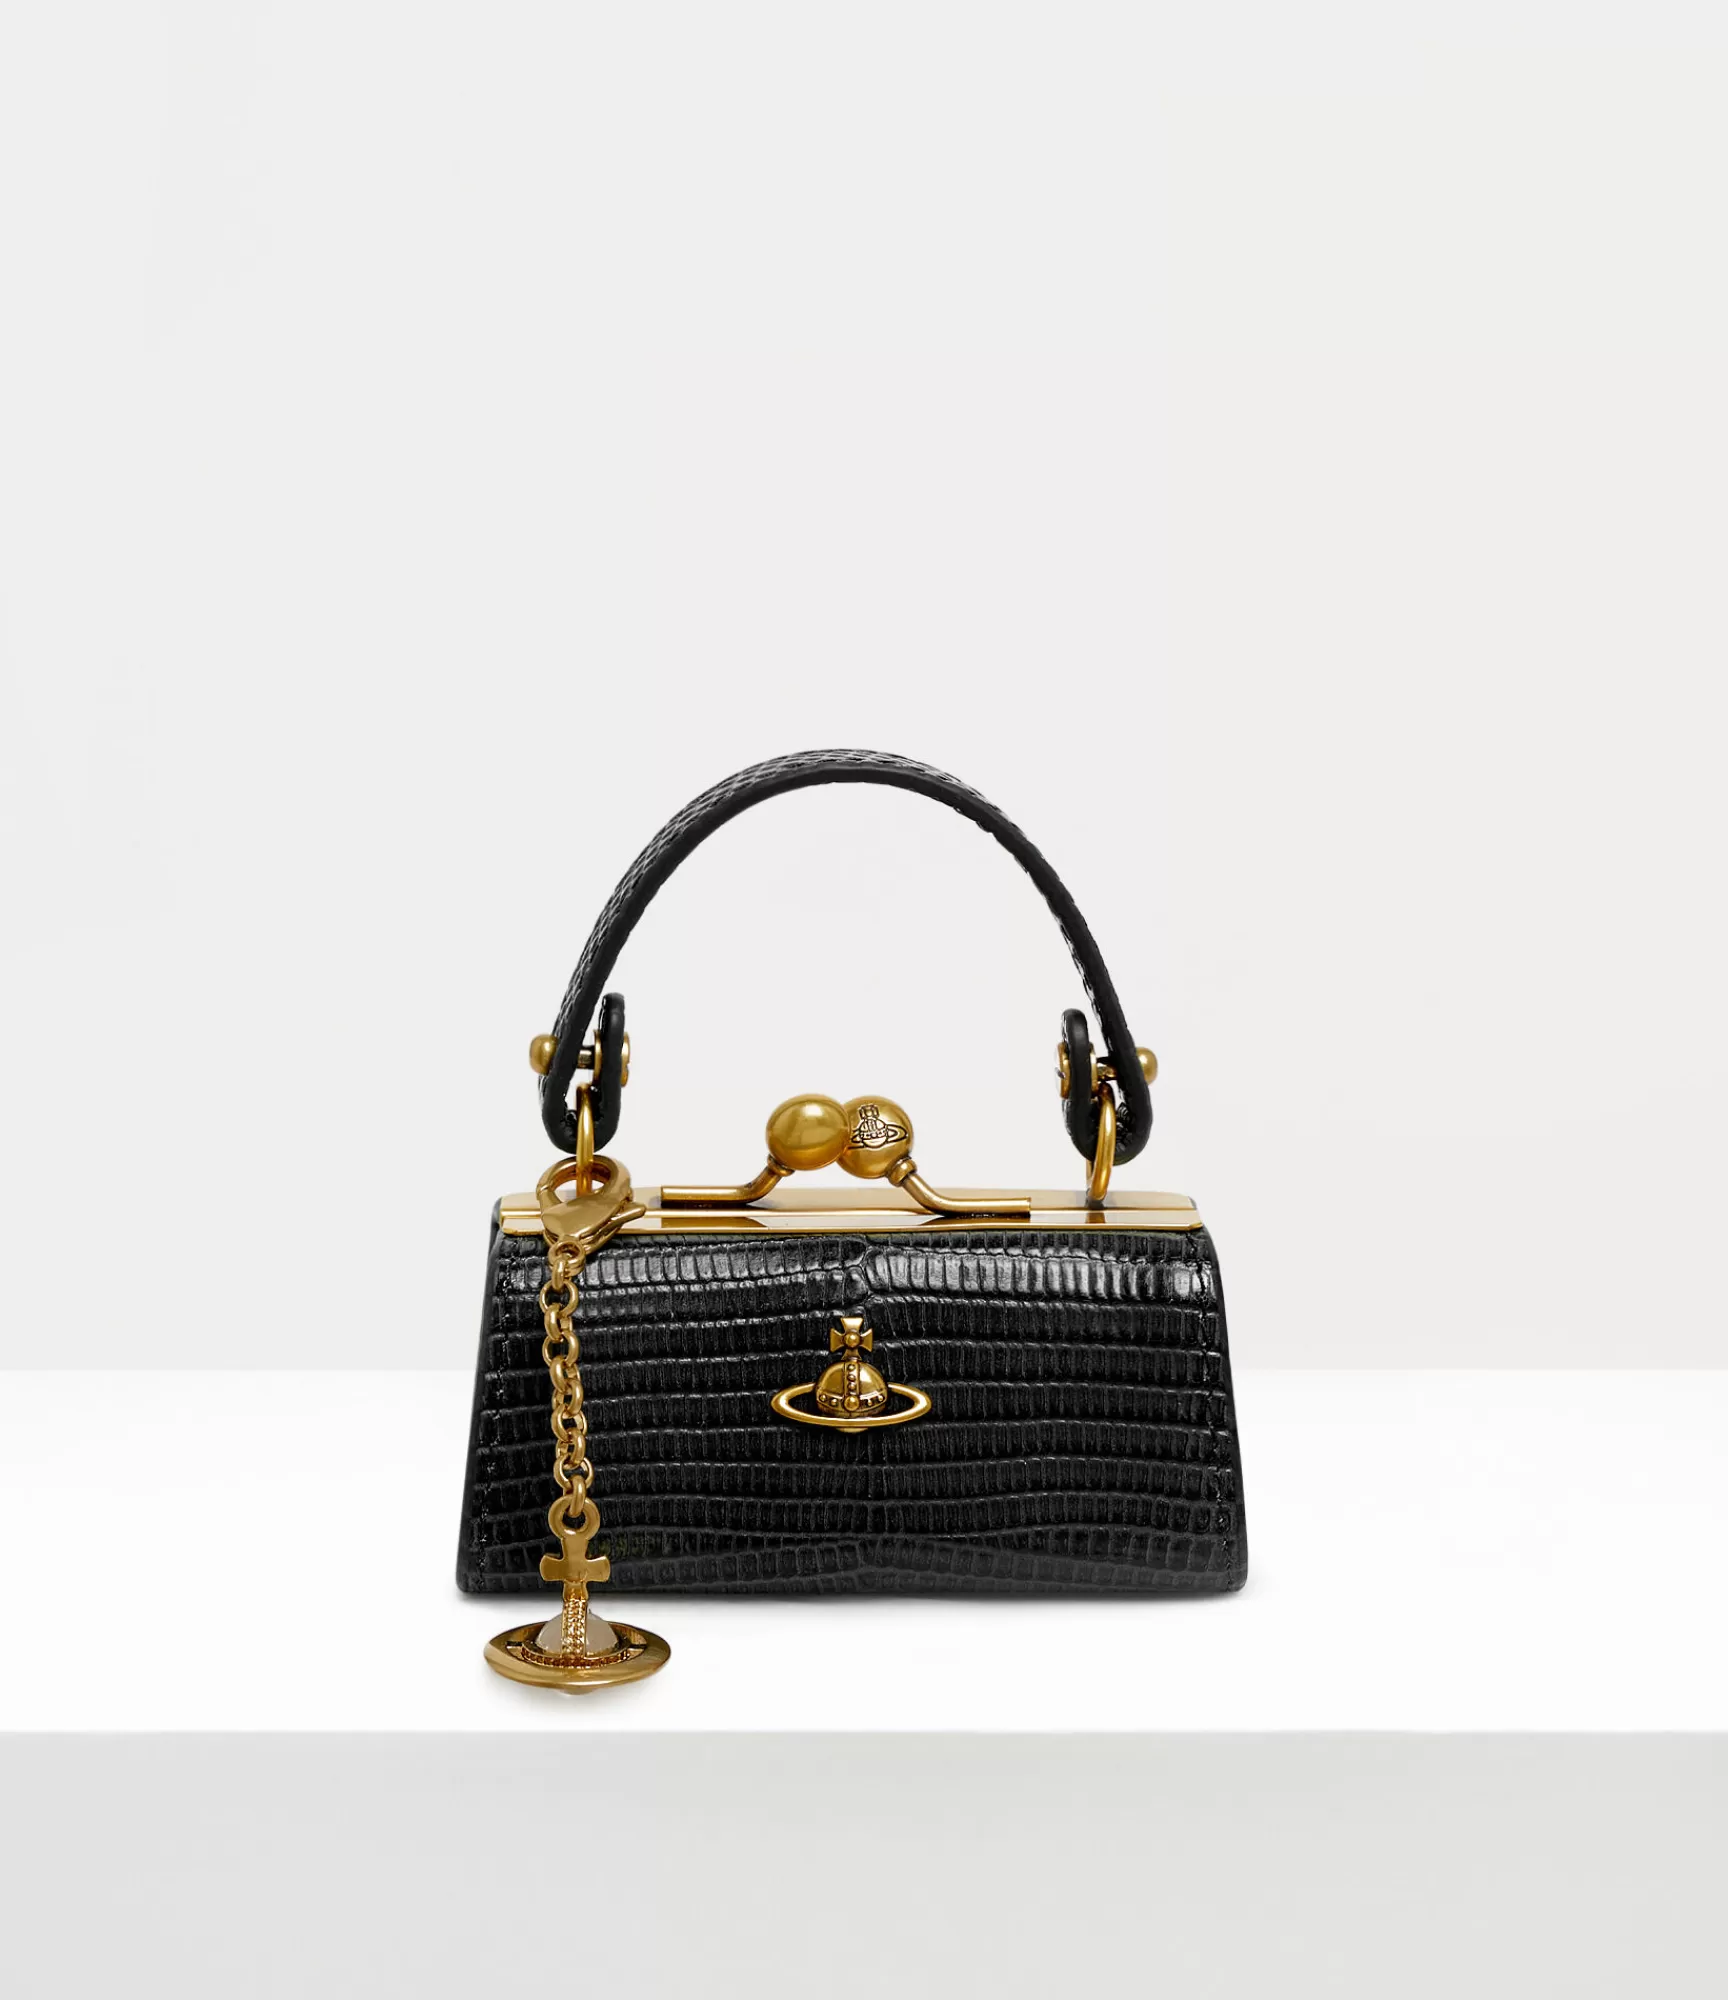 Vivienne Westwood Handbags*Lizard doll bag Black